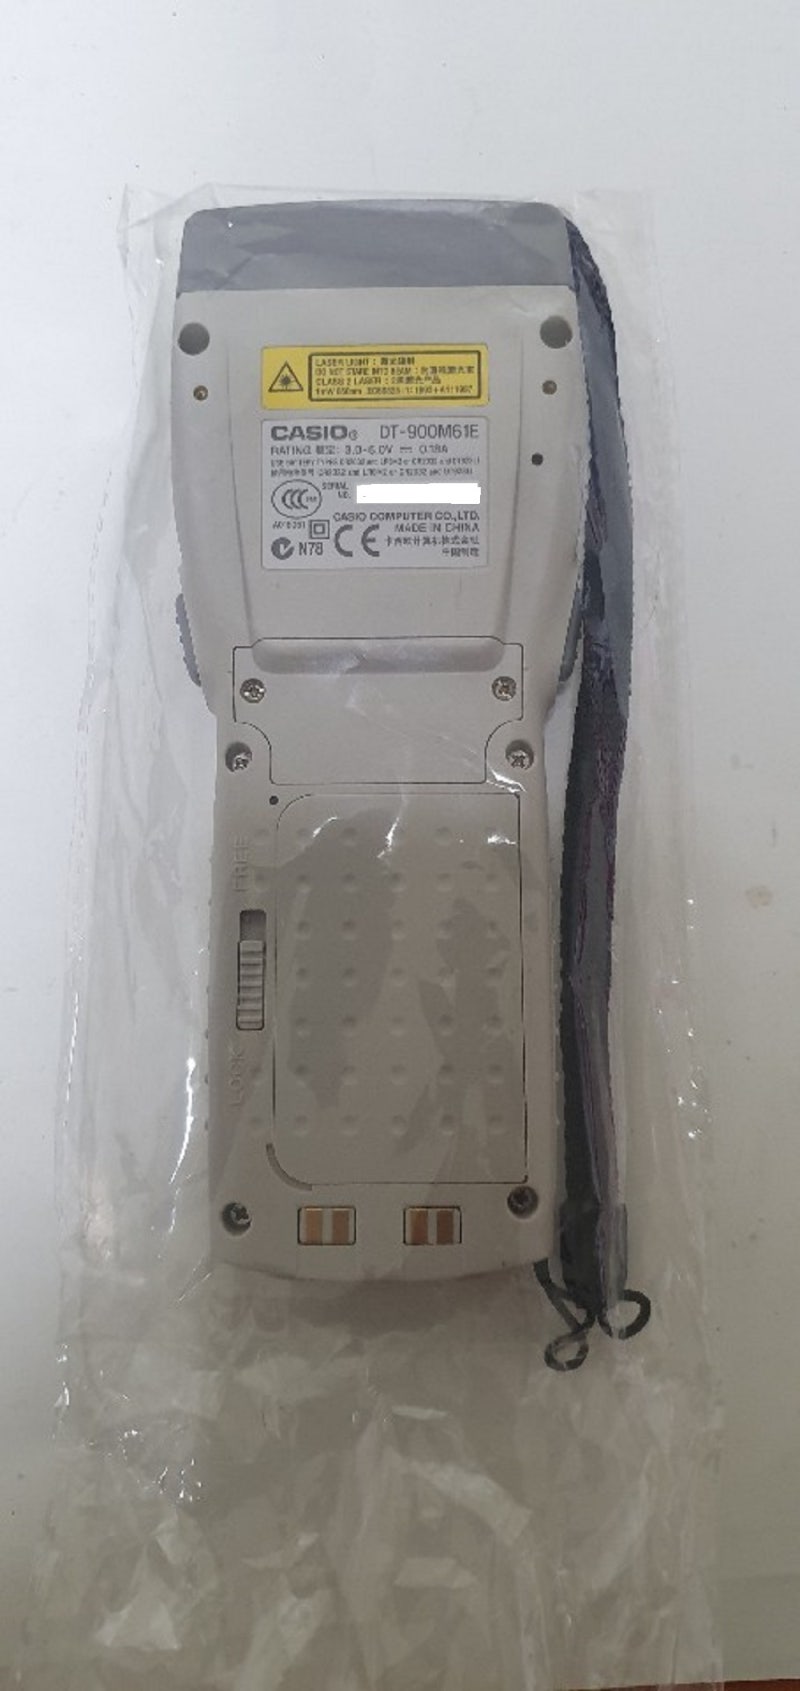 CASIO DT-900M61E 핸드터미널 A급 중고 : 네이버 블로그